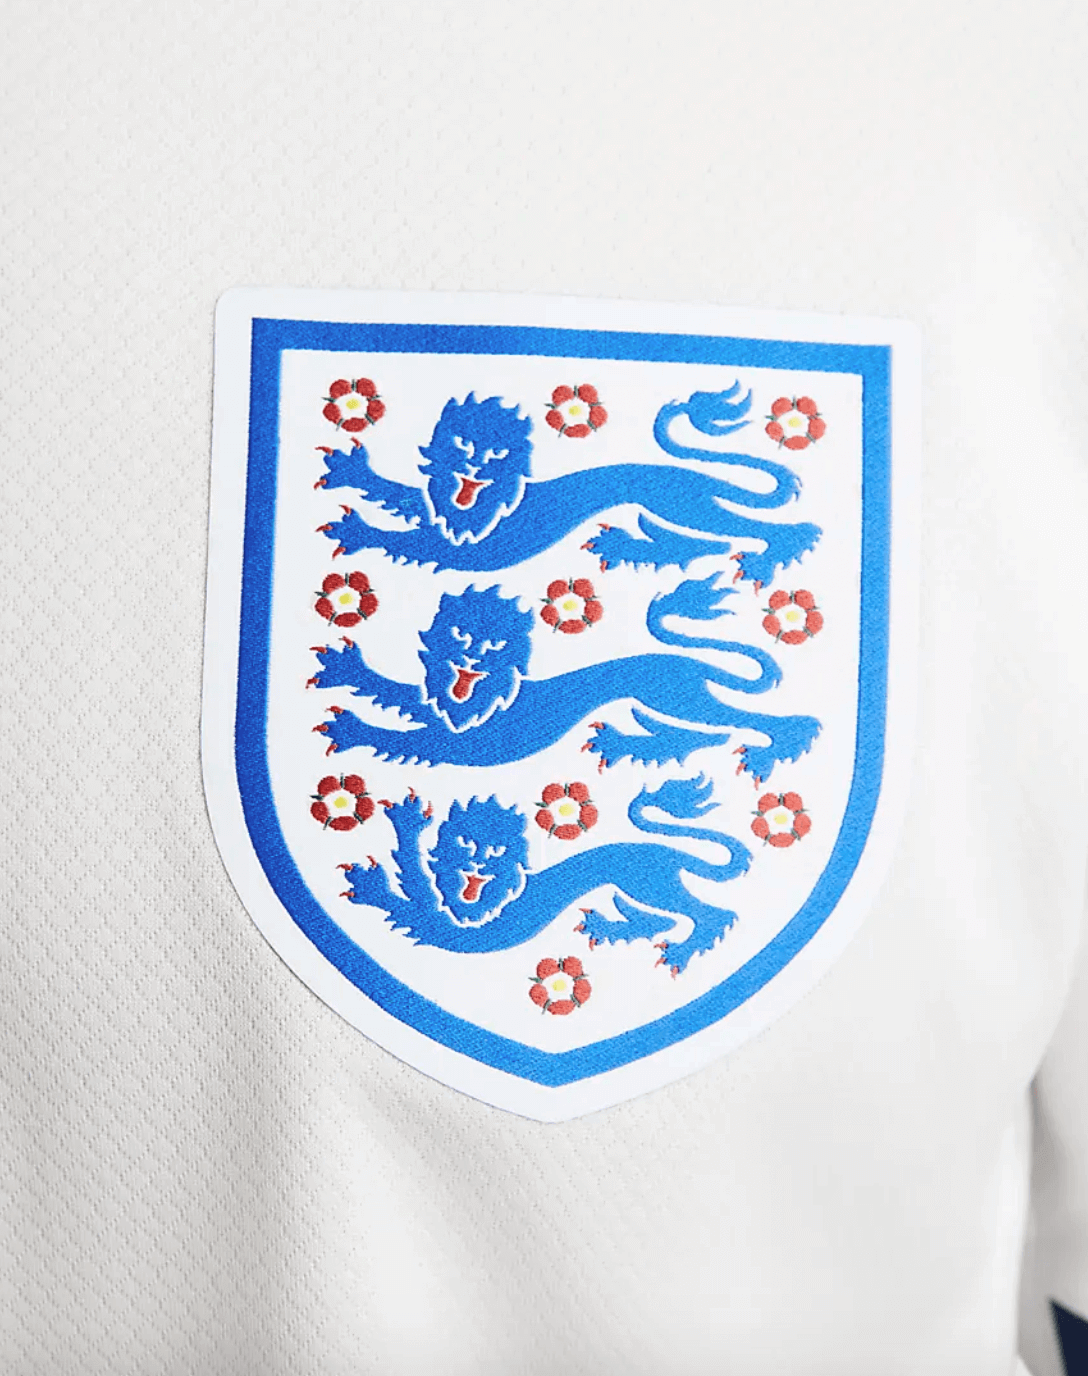 Camiseta Nike Inglaterra 2023 Primera Equipación